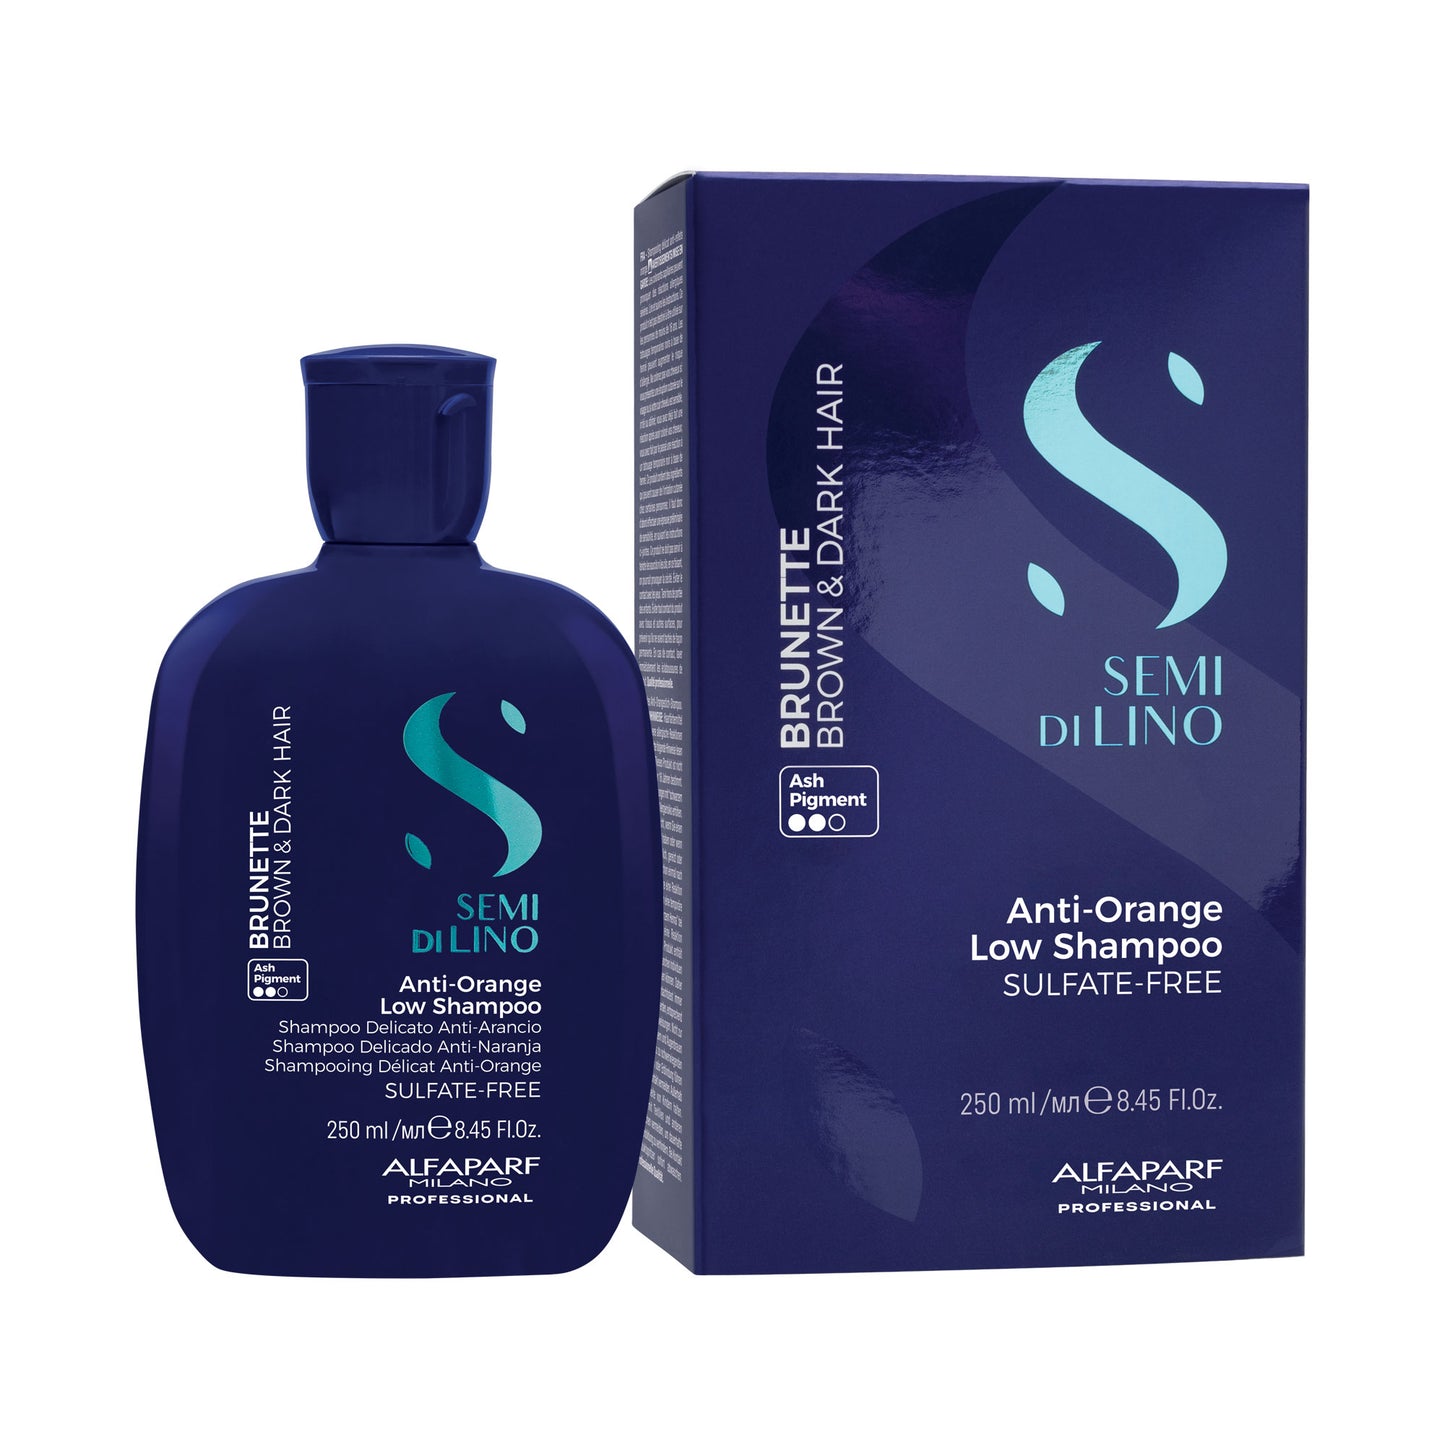 Semi di Lino / Anti-Orange Low Shampoo - Shampoo delicato anti-arancio per capelli castani e bruni